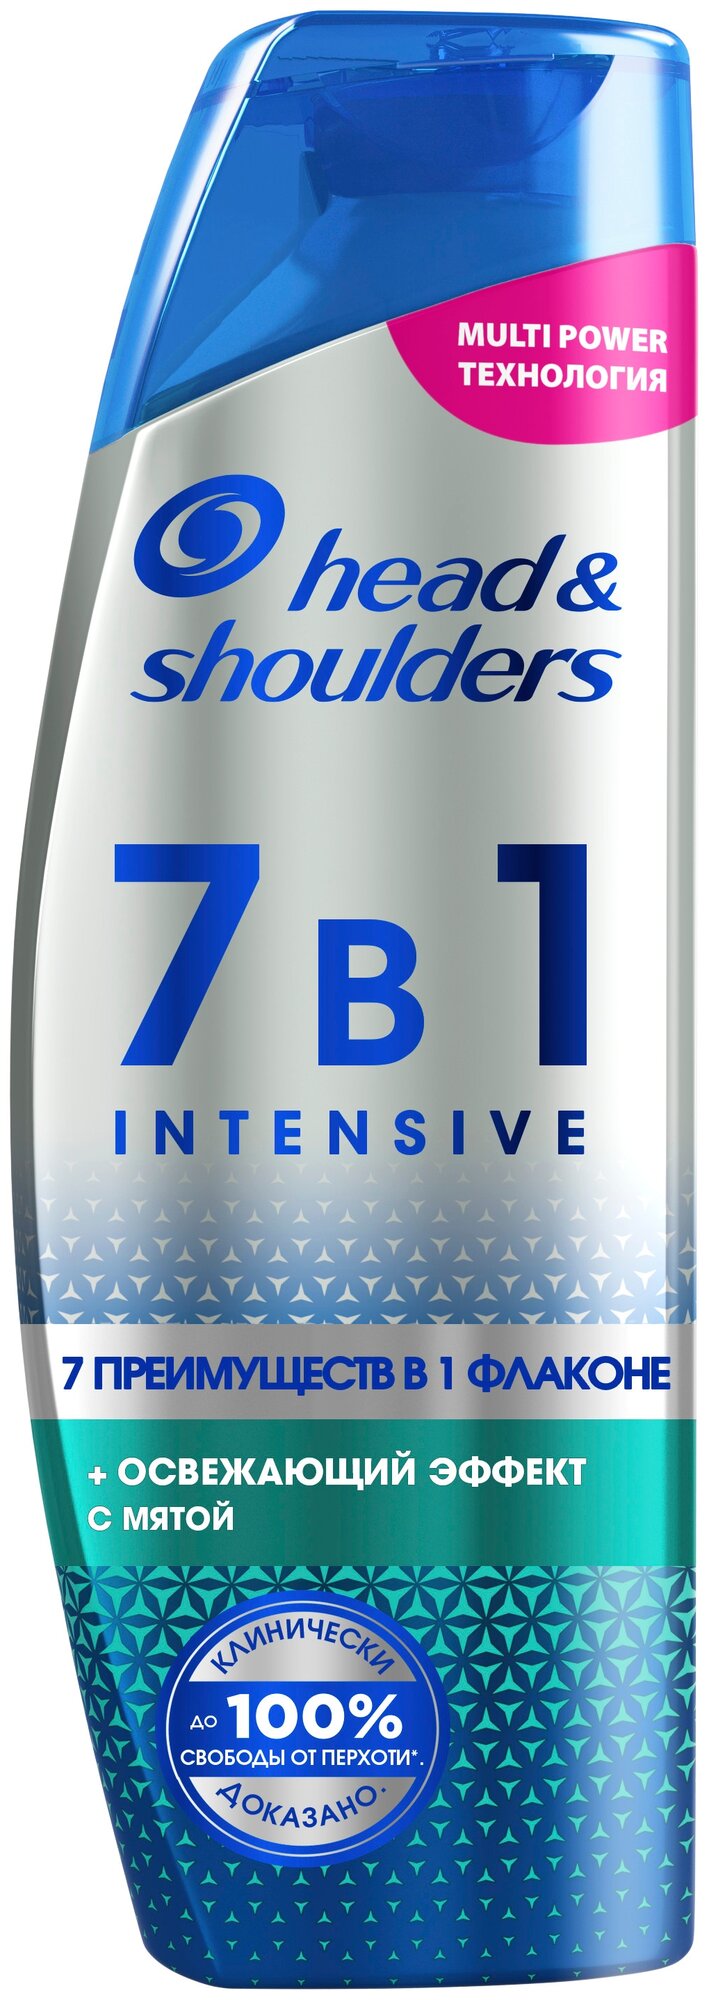 Head & Shoulders шампунь 7 в 1 Intensive Освежающий эффект с мятой, 270 мл